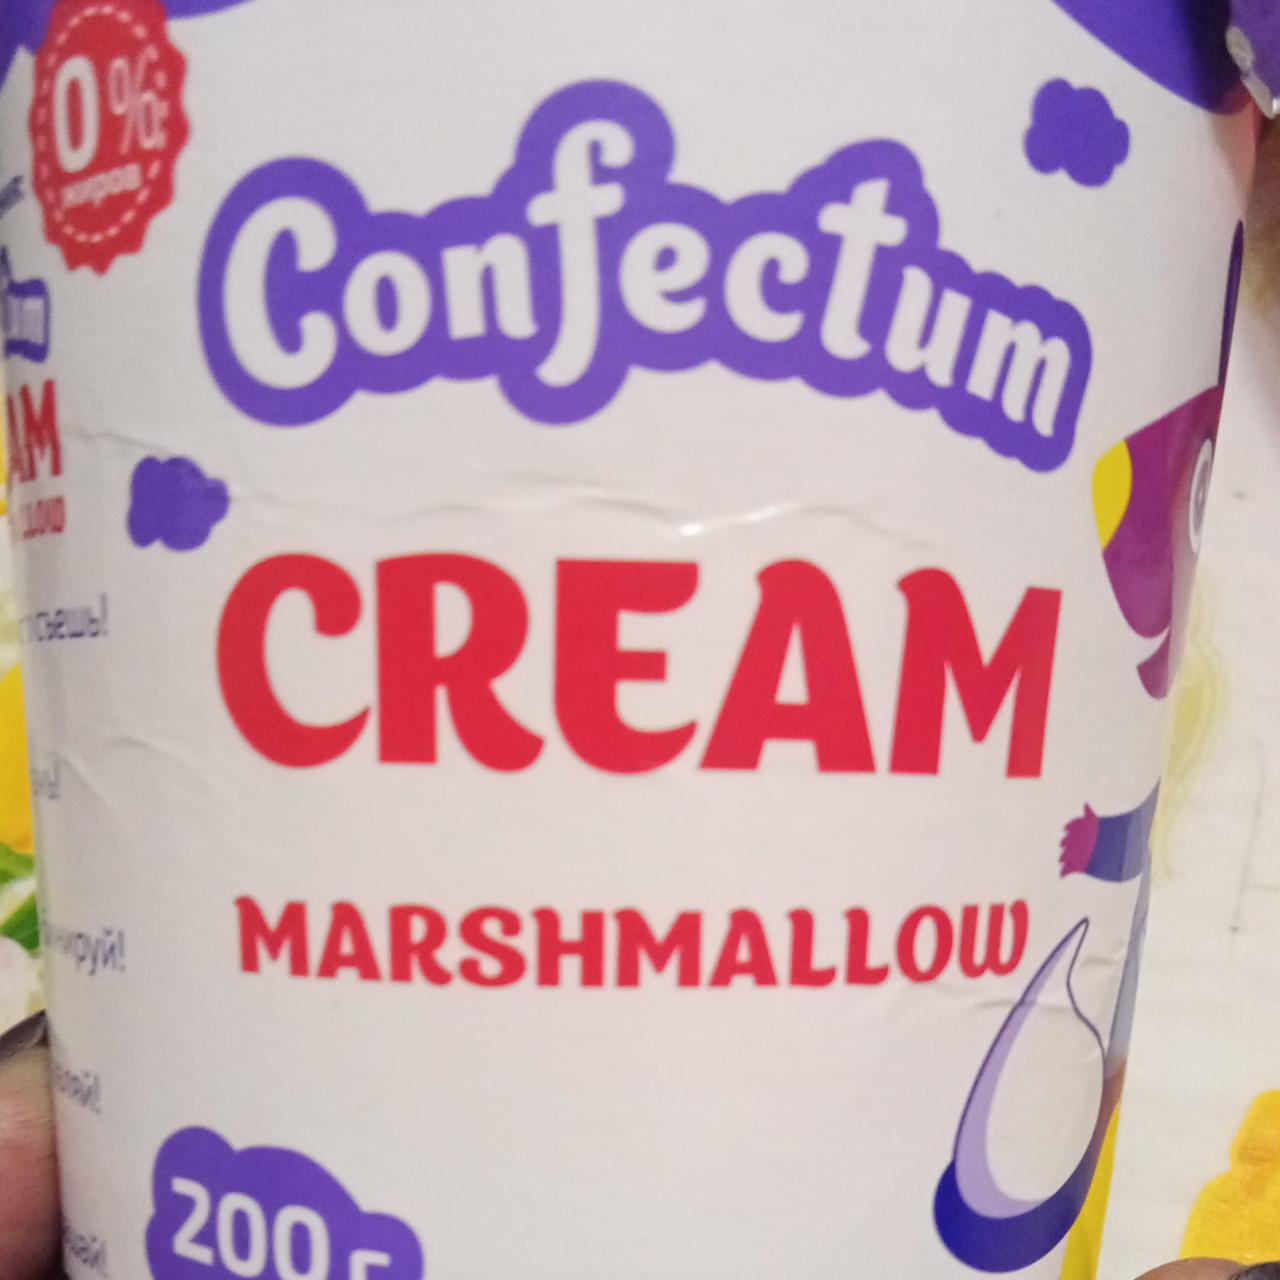 Фото - Маршмеллоу паста Marshmallow Cream Confectum